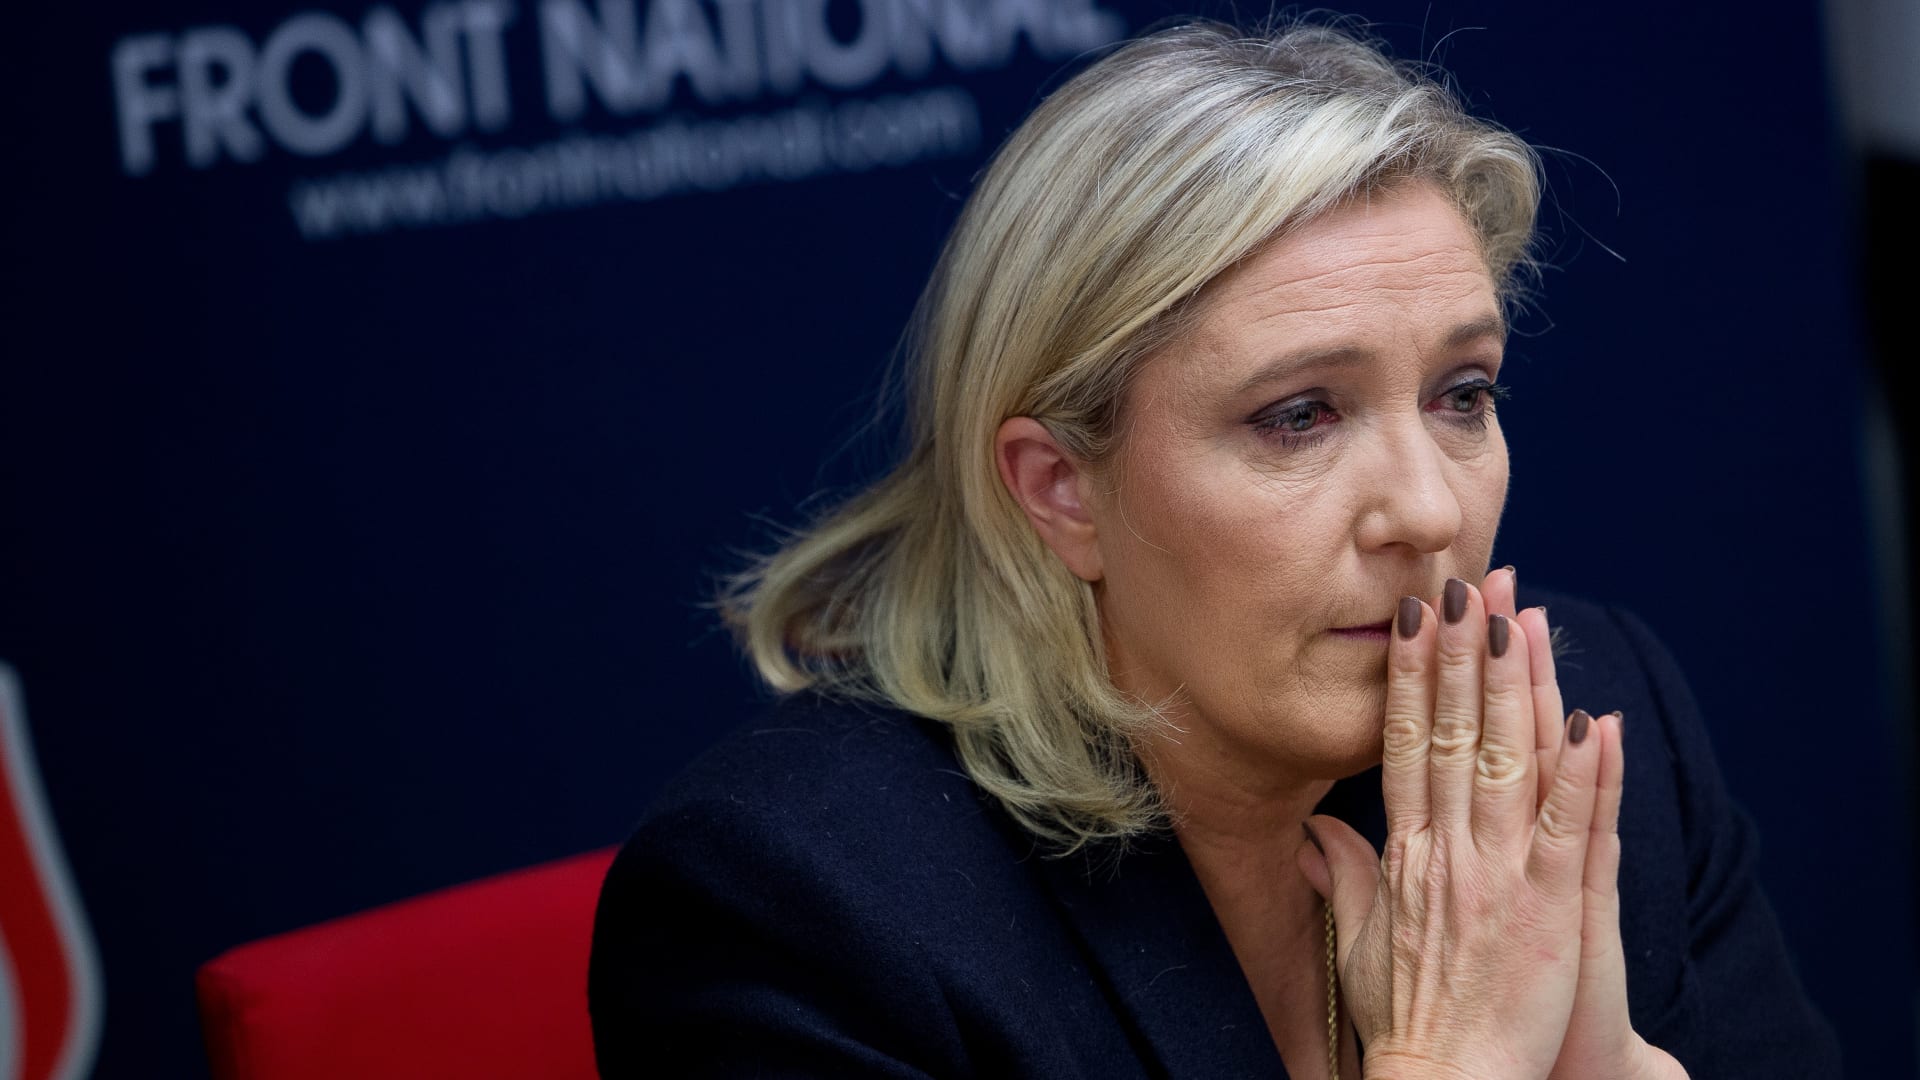 مرشحة الرئاسة الفرنسية مارين لوبان تفقد الحصانة لنشرها صوراً عنيفة لداعش على تويتر